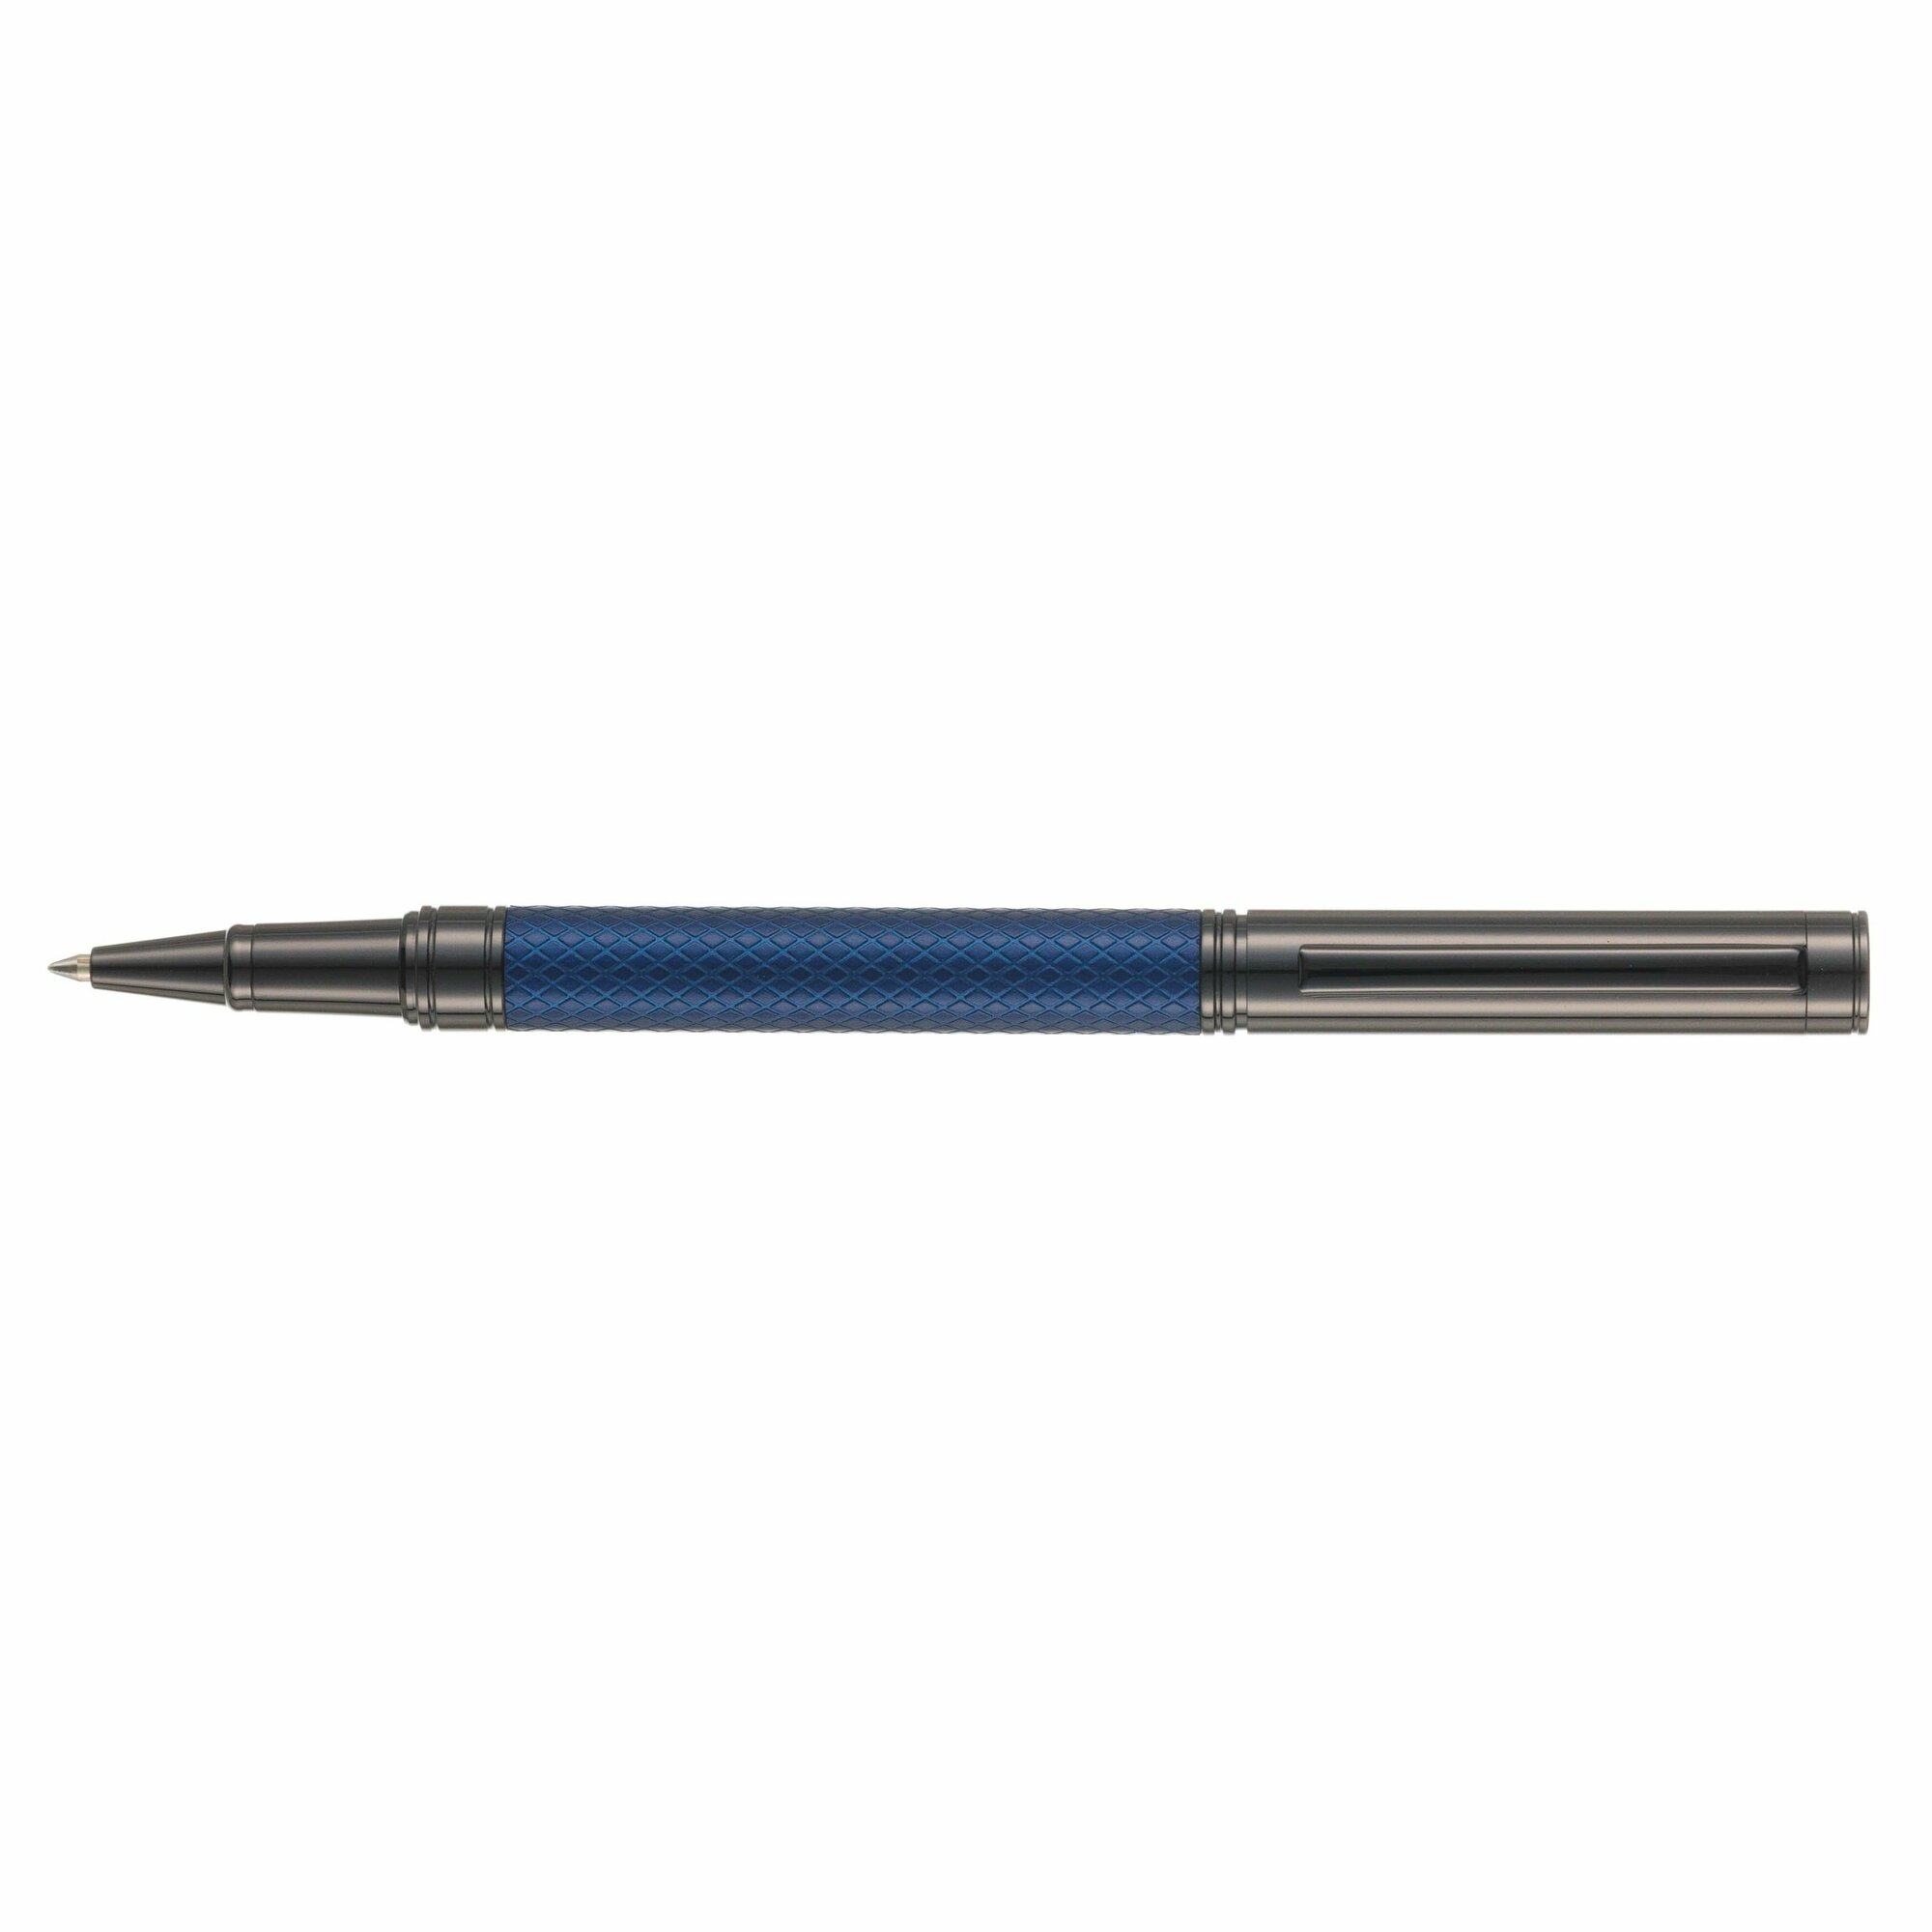 Ручка роллер Pierre Cardin Losange, латунь, синяя, цвет чернил синий, подарочный футляр